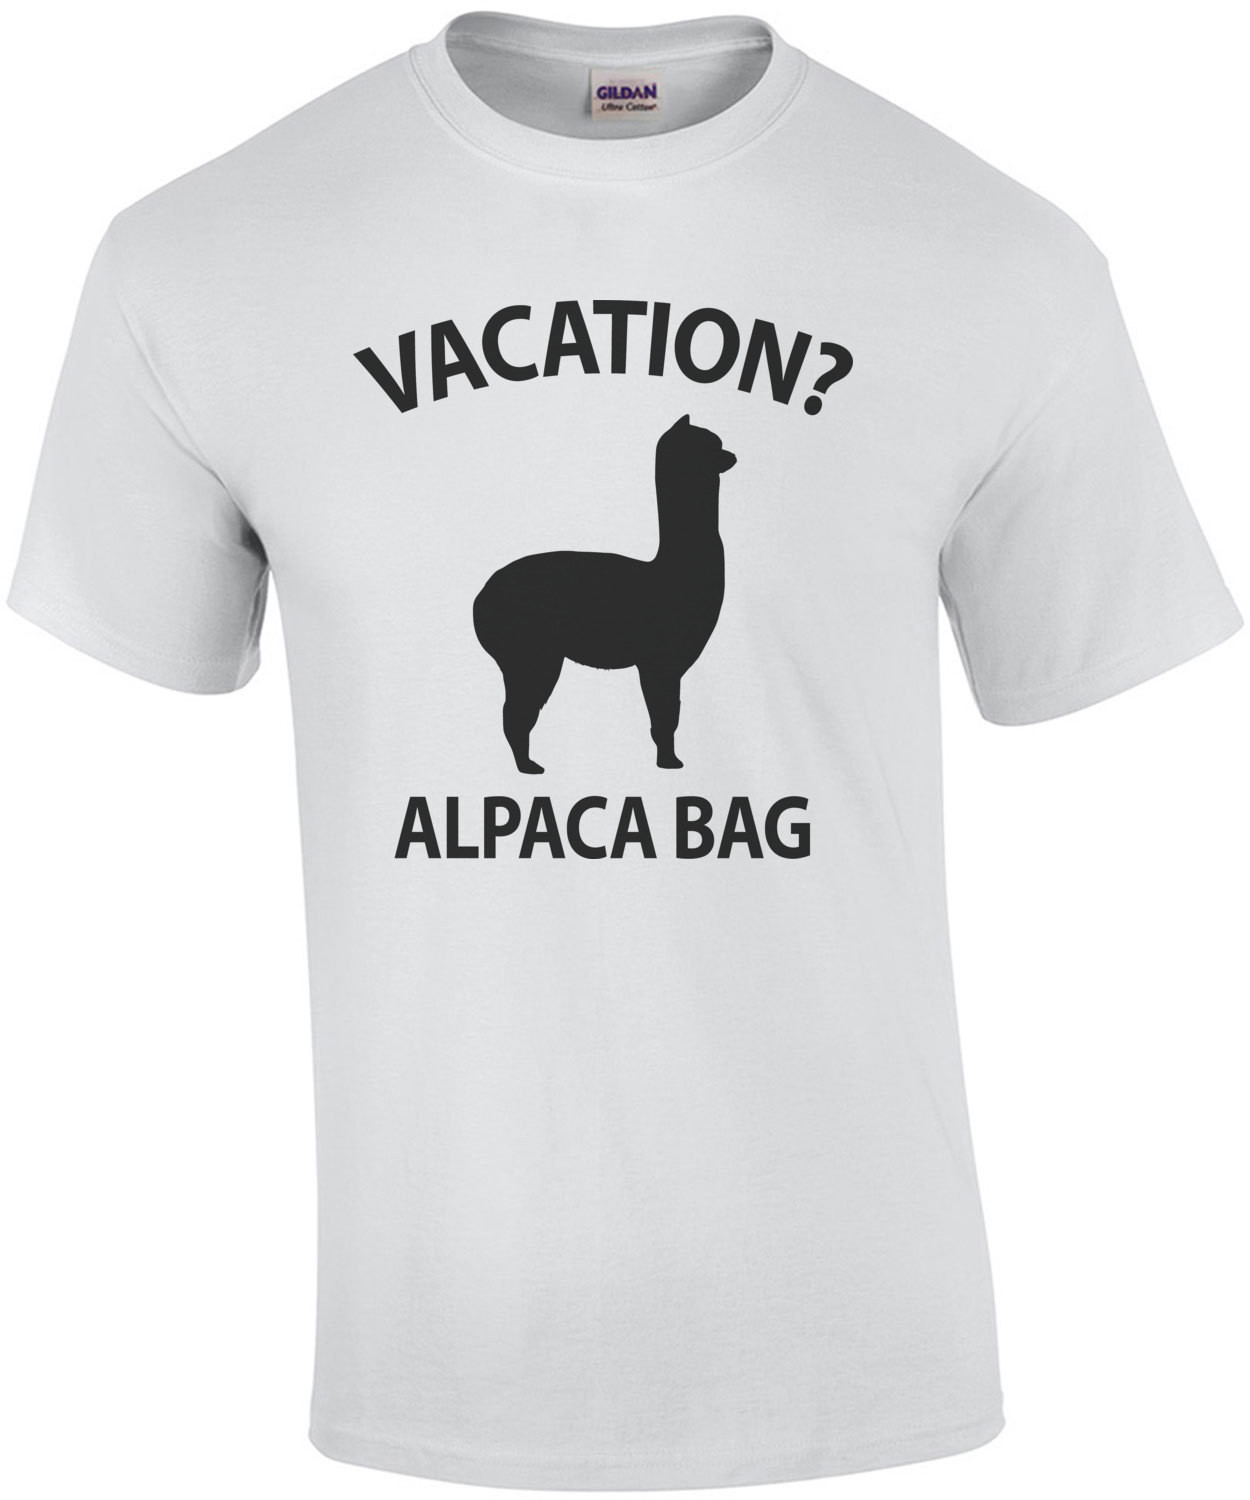 Vacation? Alpaca Bag - Funny Pun T-Shirt